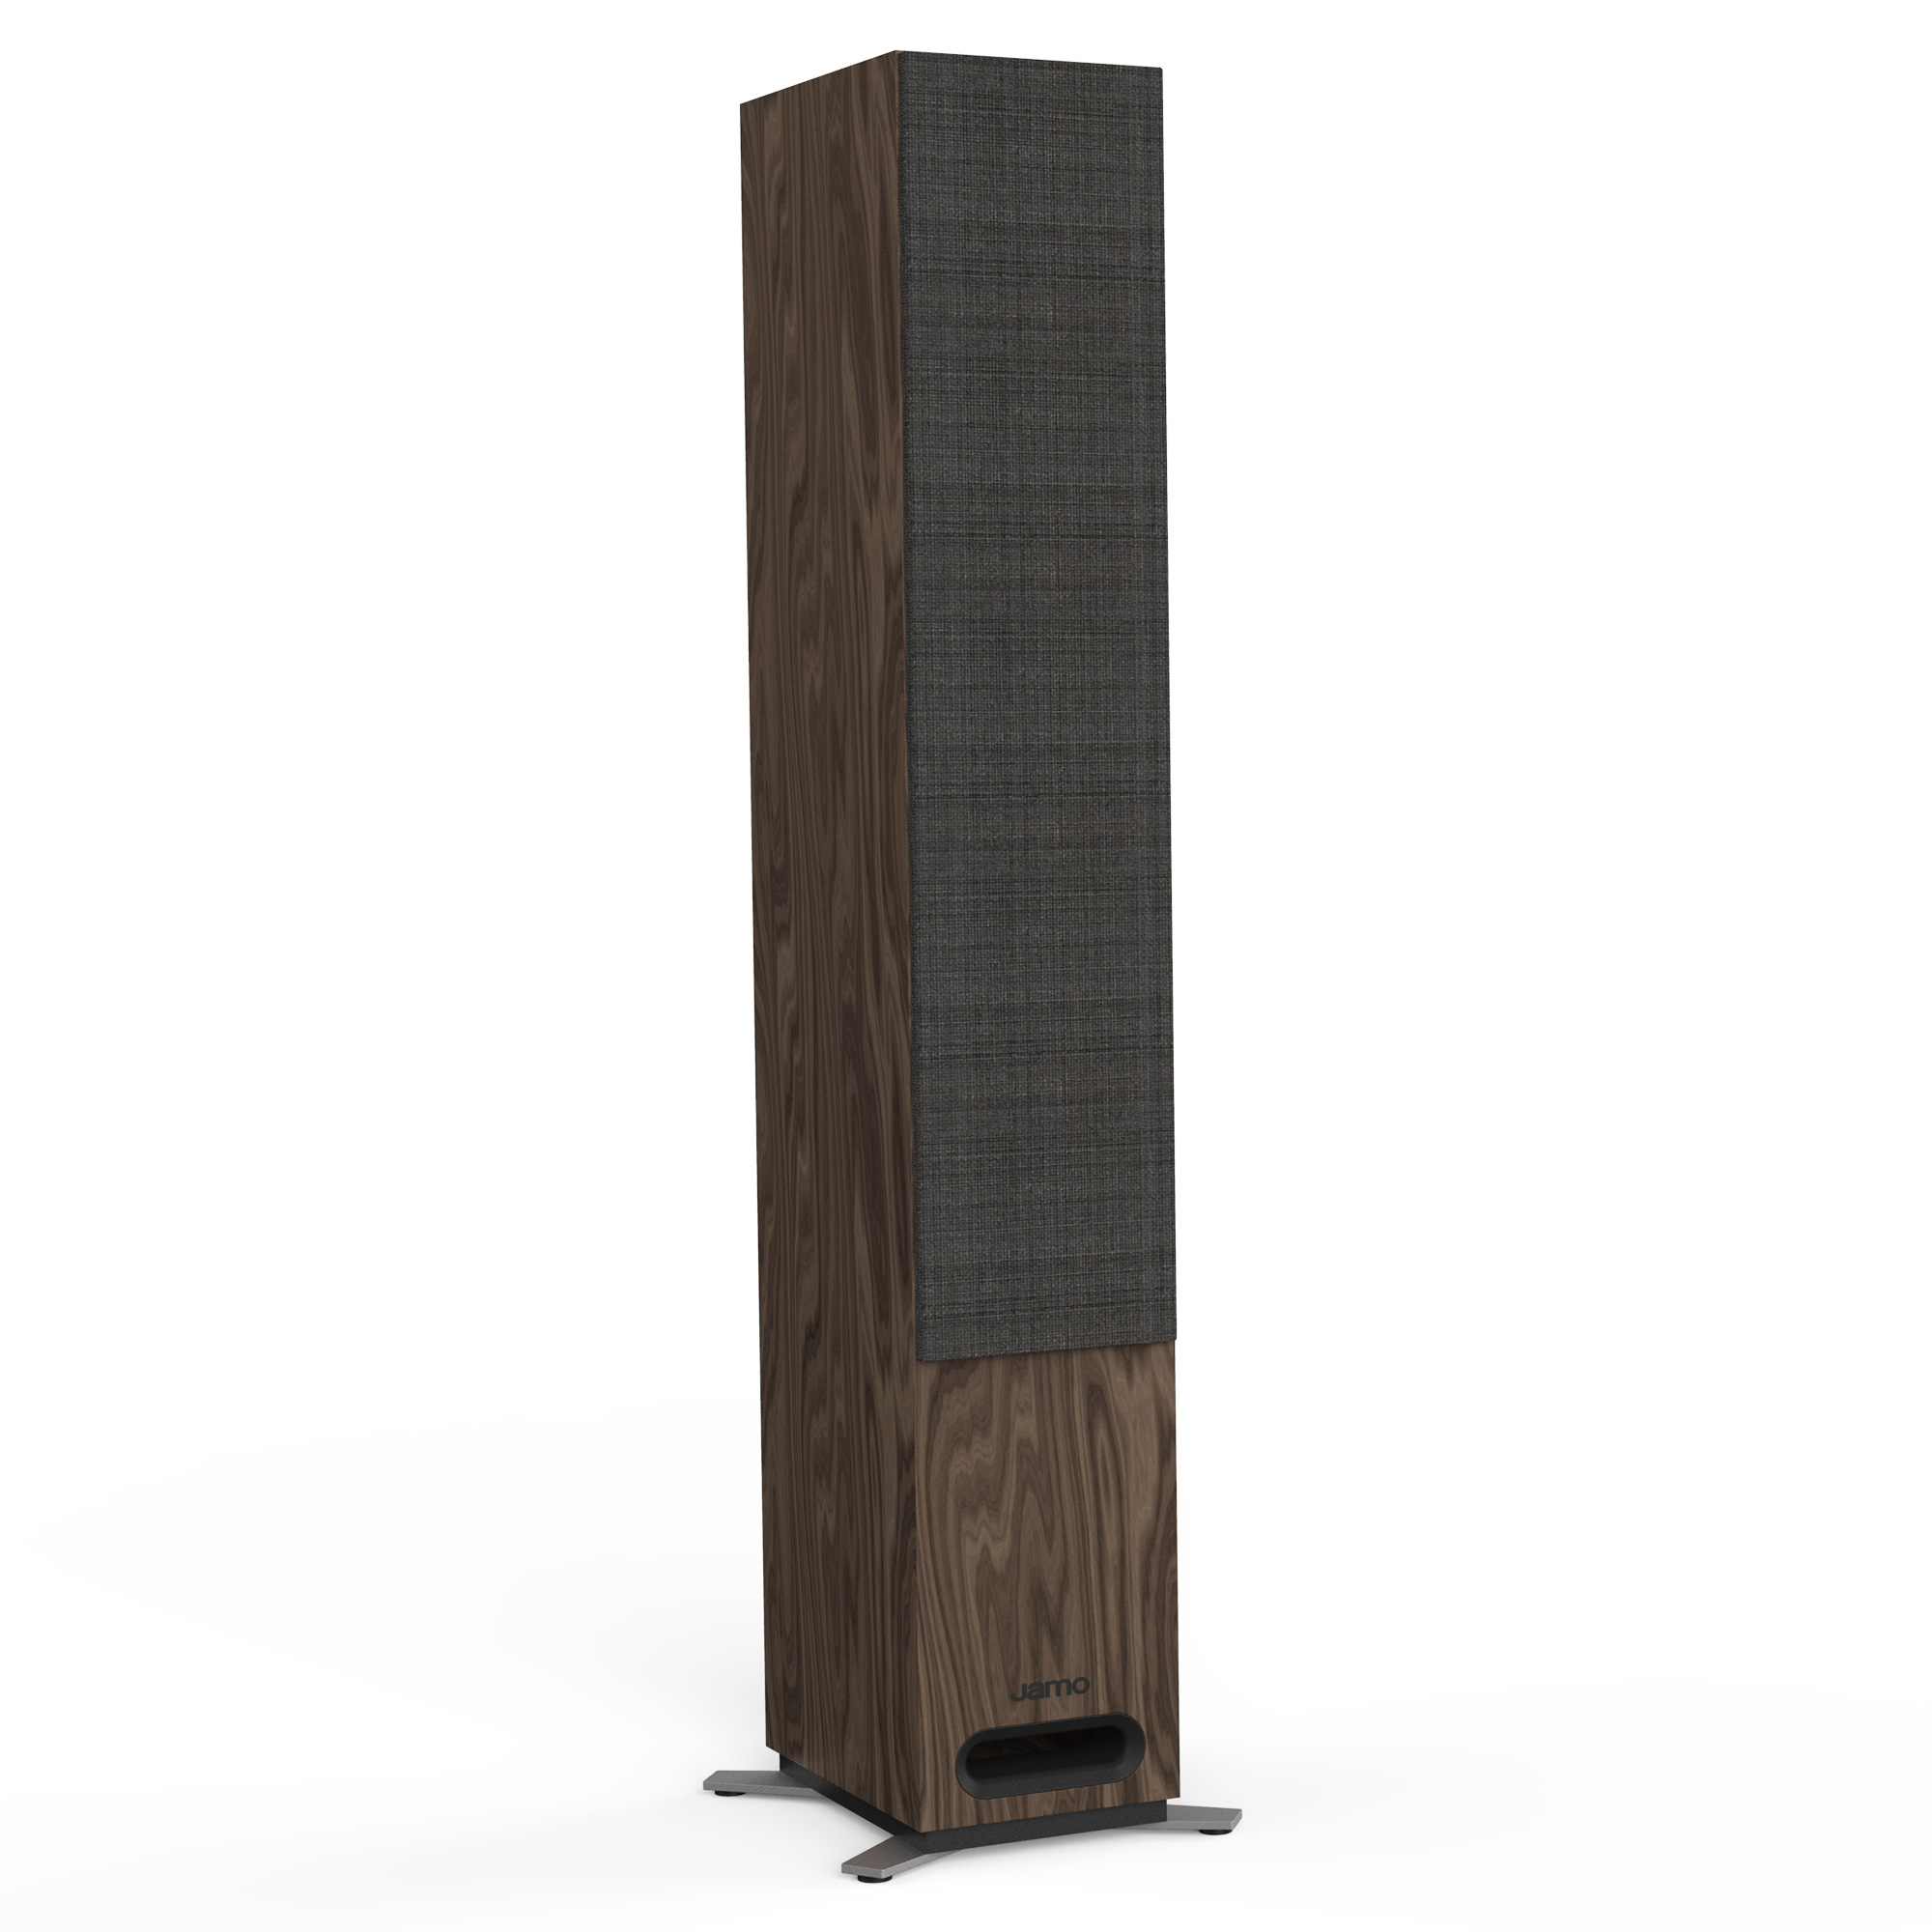 Jamo | S 809 Floorstanding Speaker